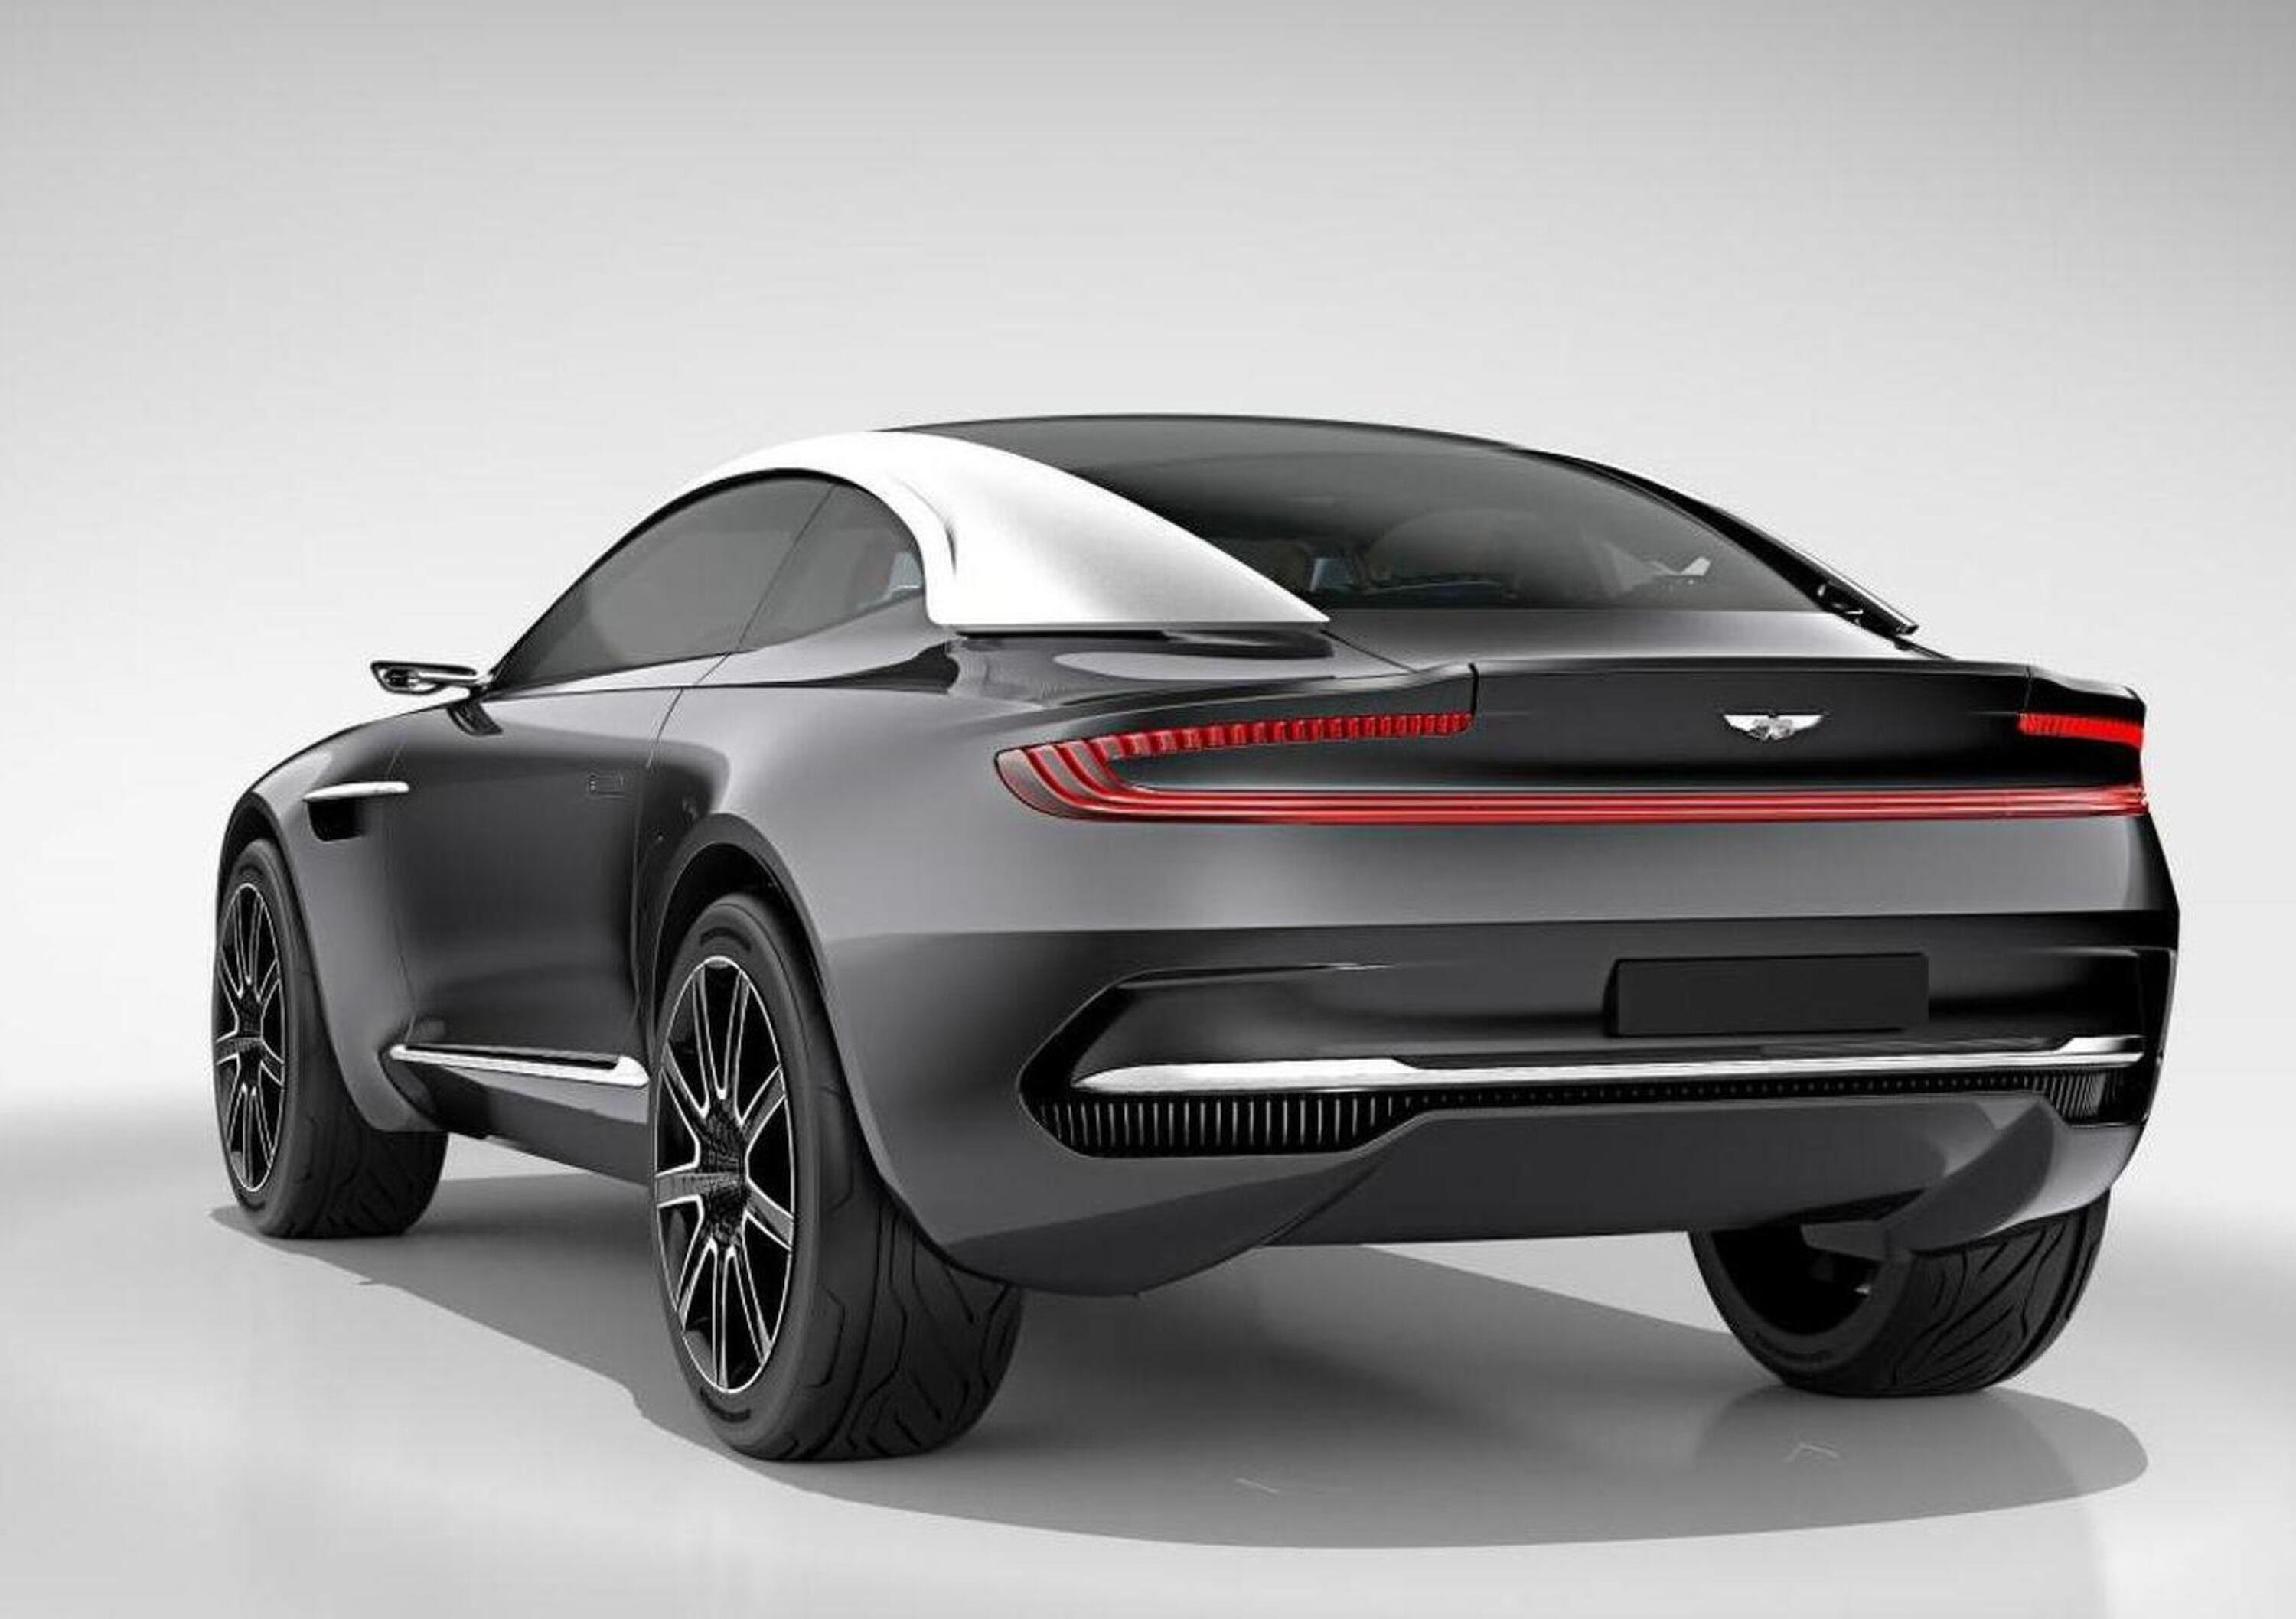 Aston Martin SUV, 5 porte con motore 6 cilindri in linea AMG?